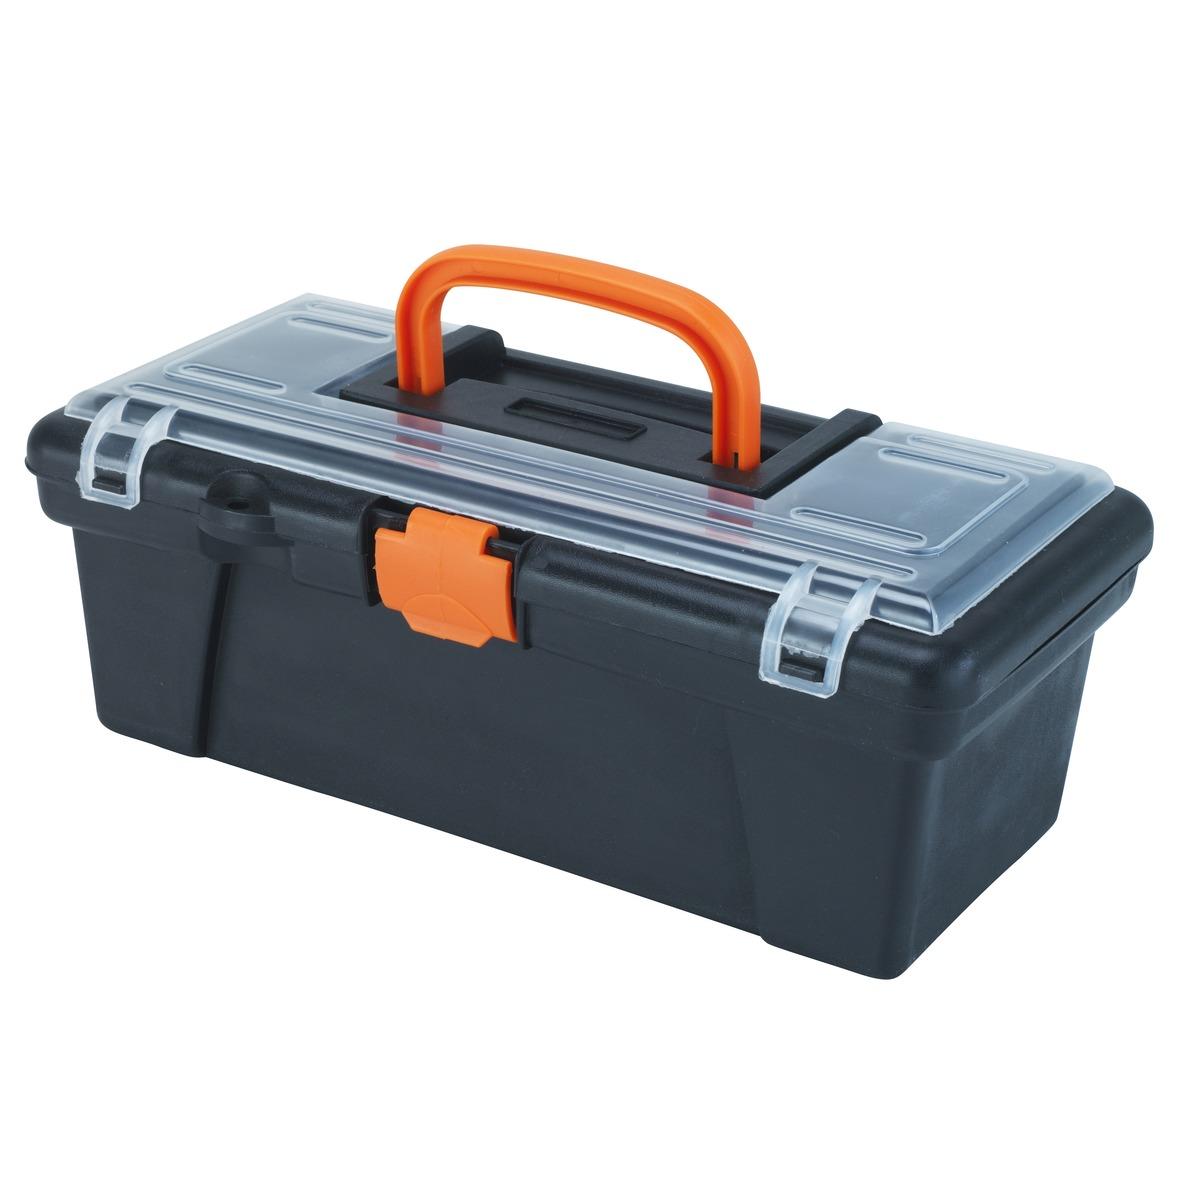 Boîte à outils - 30 x 16 x H 12 cm - Orange, Noir, Transparent